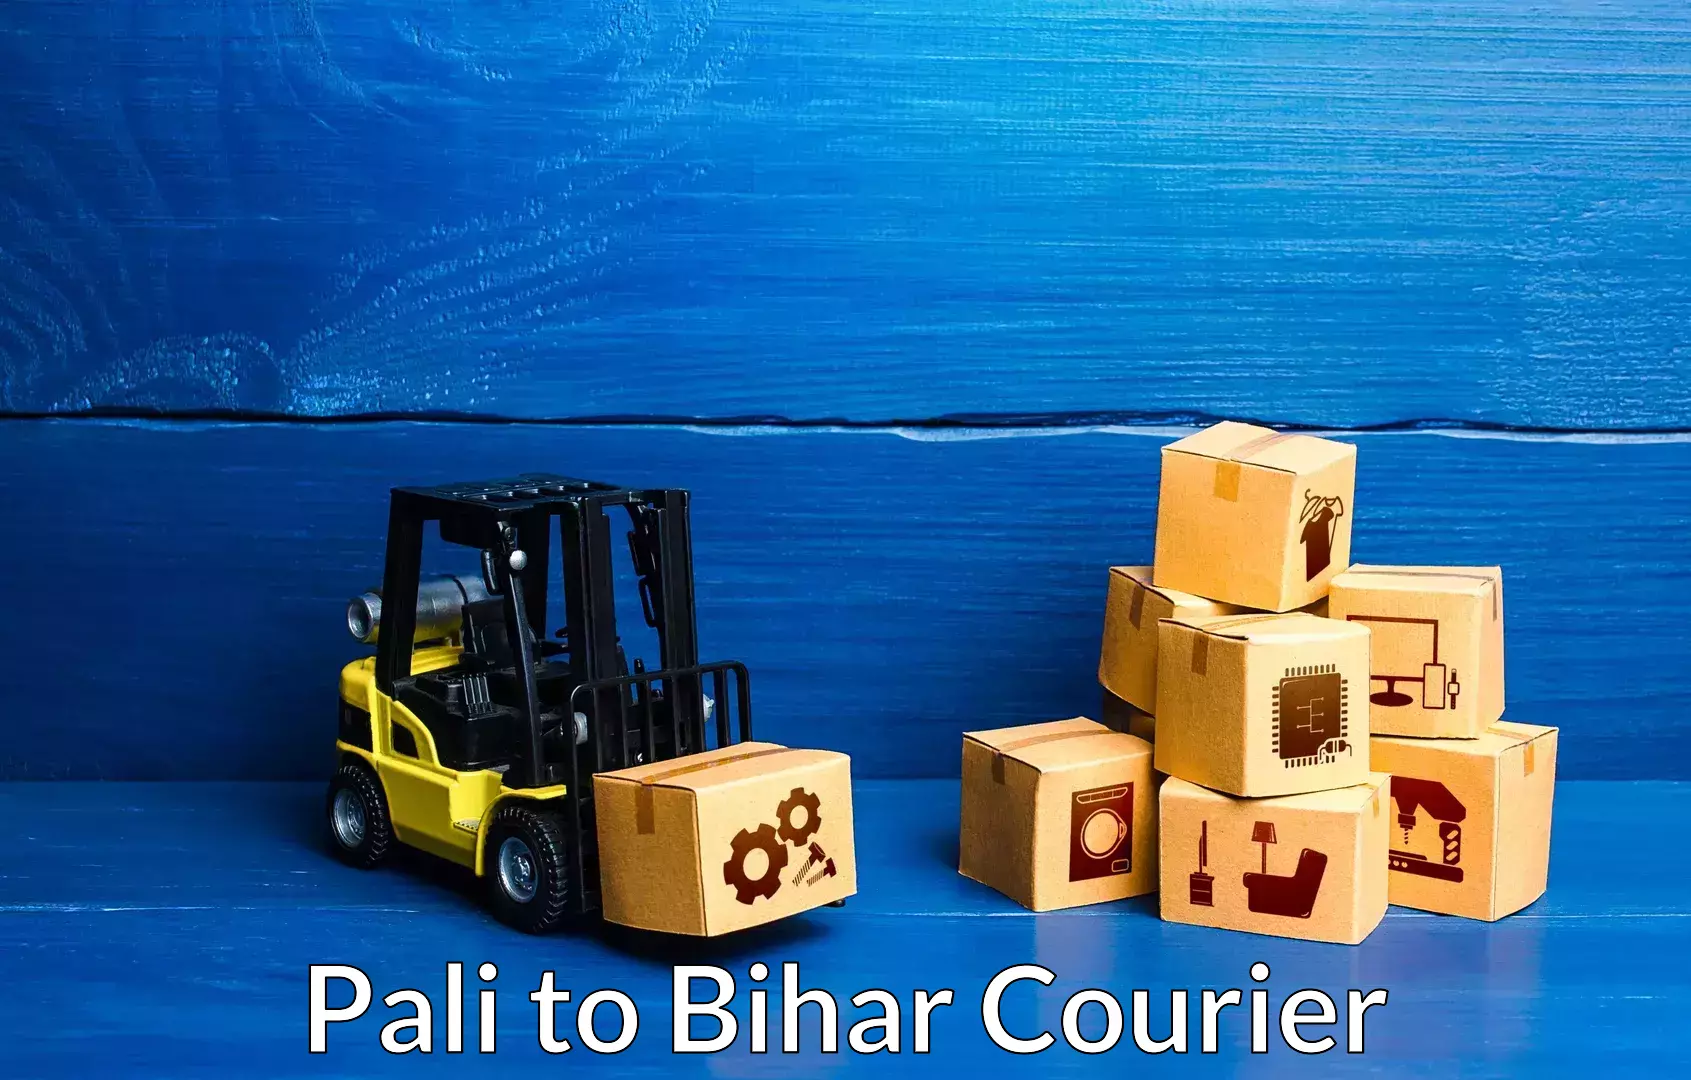 Furniture transport specialists Pali to Bihar